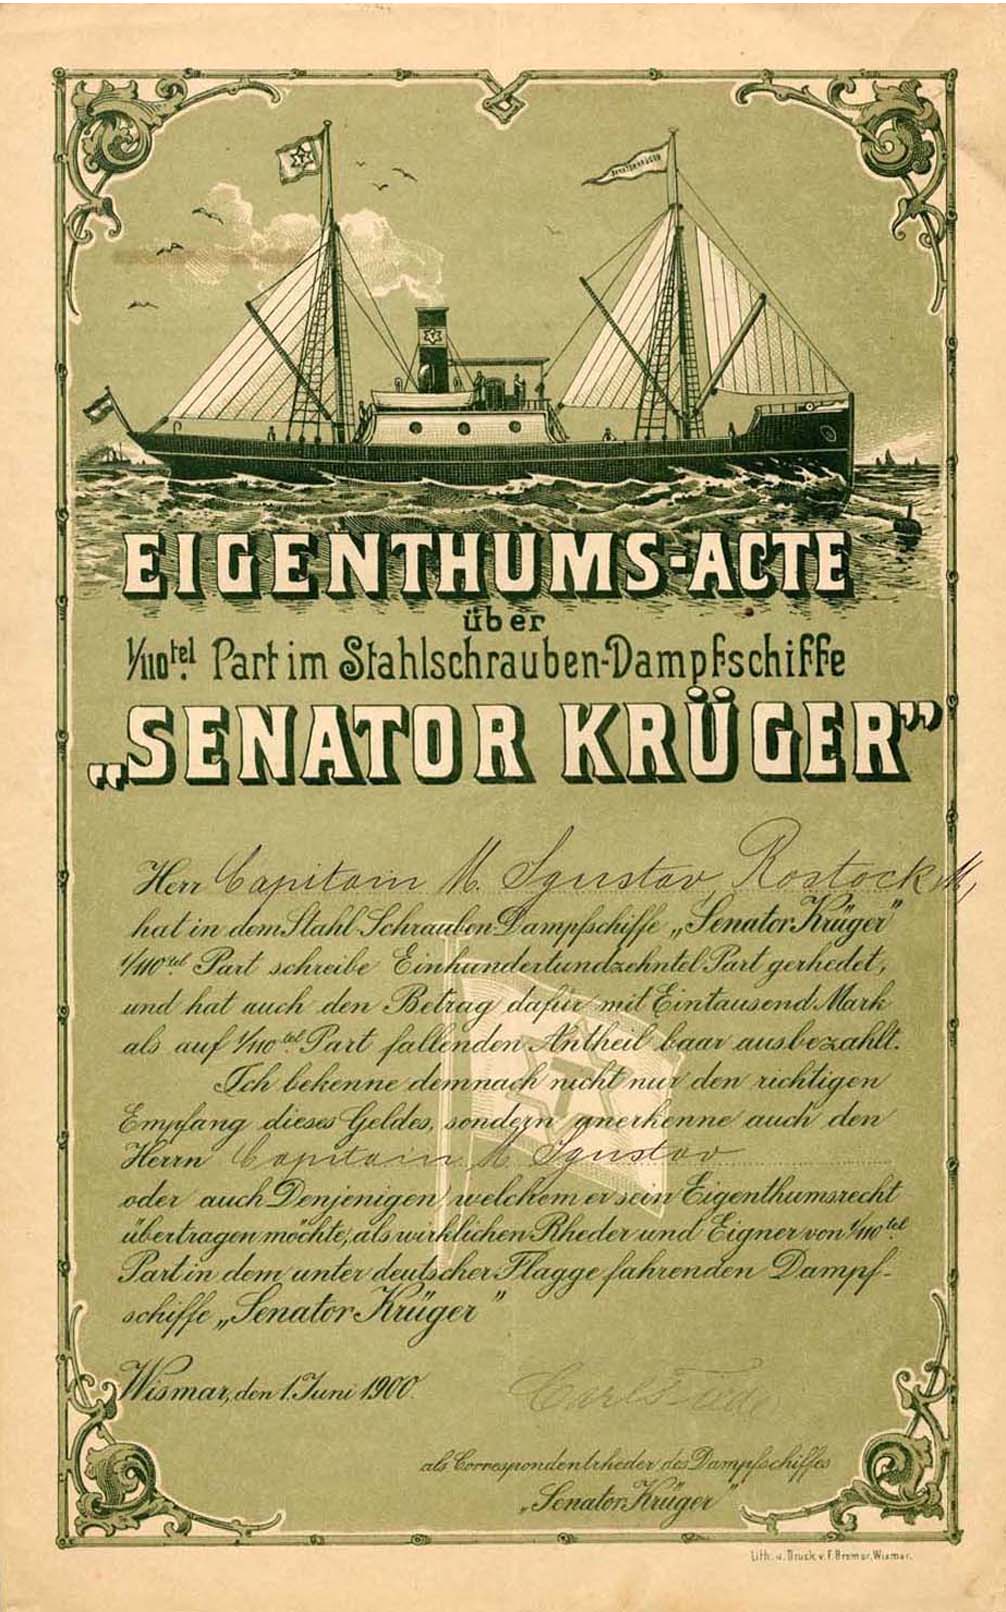 Stahl-Schrauben-Dampfschiff Senator Krger